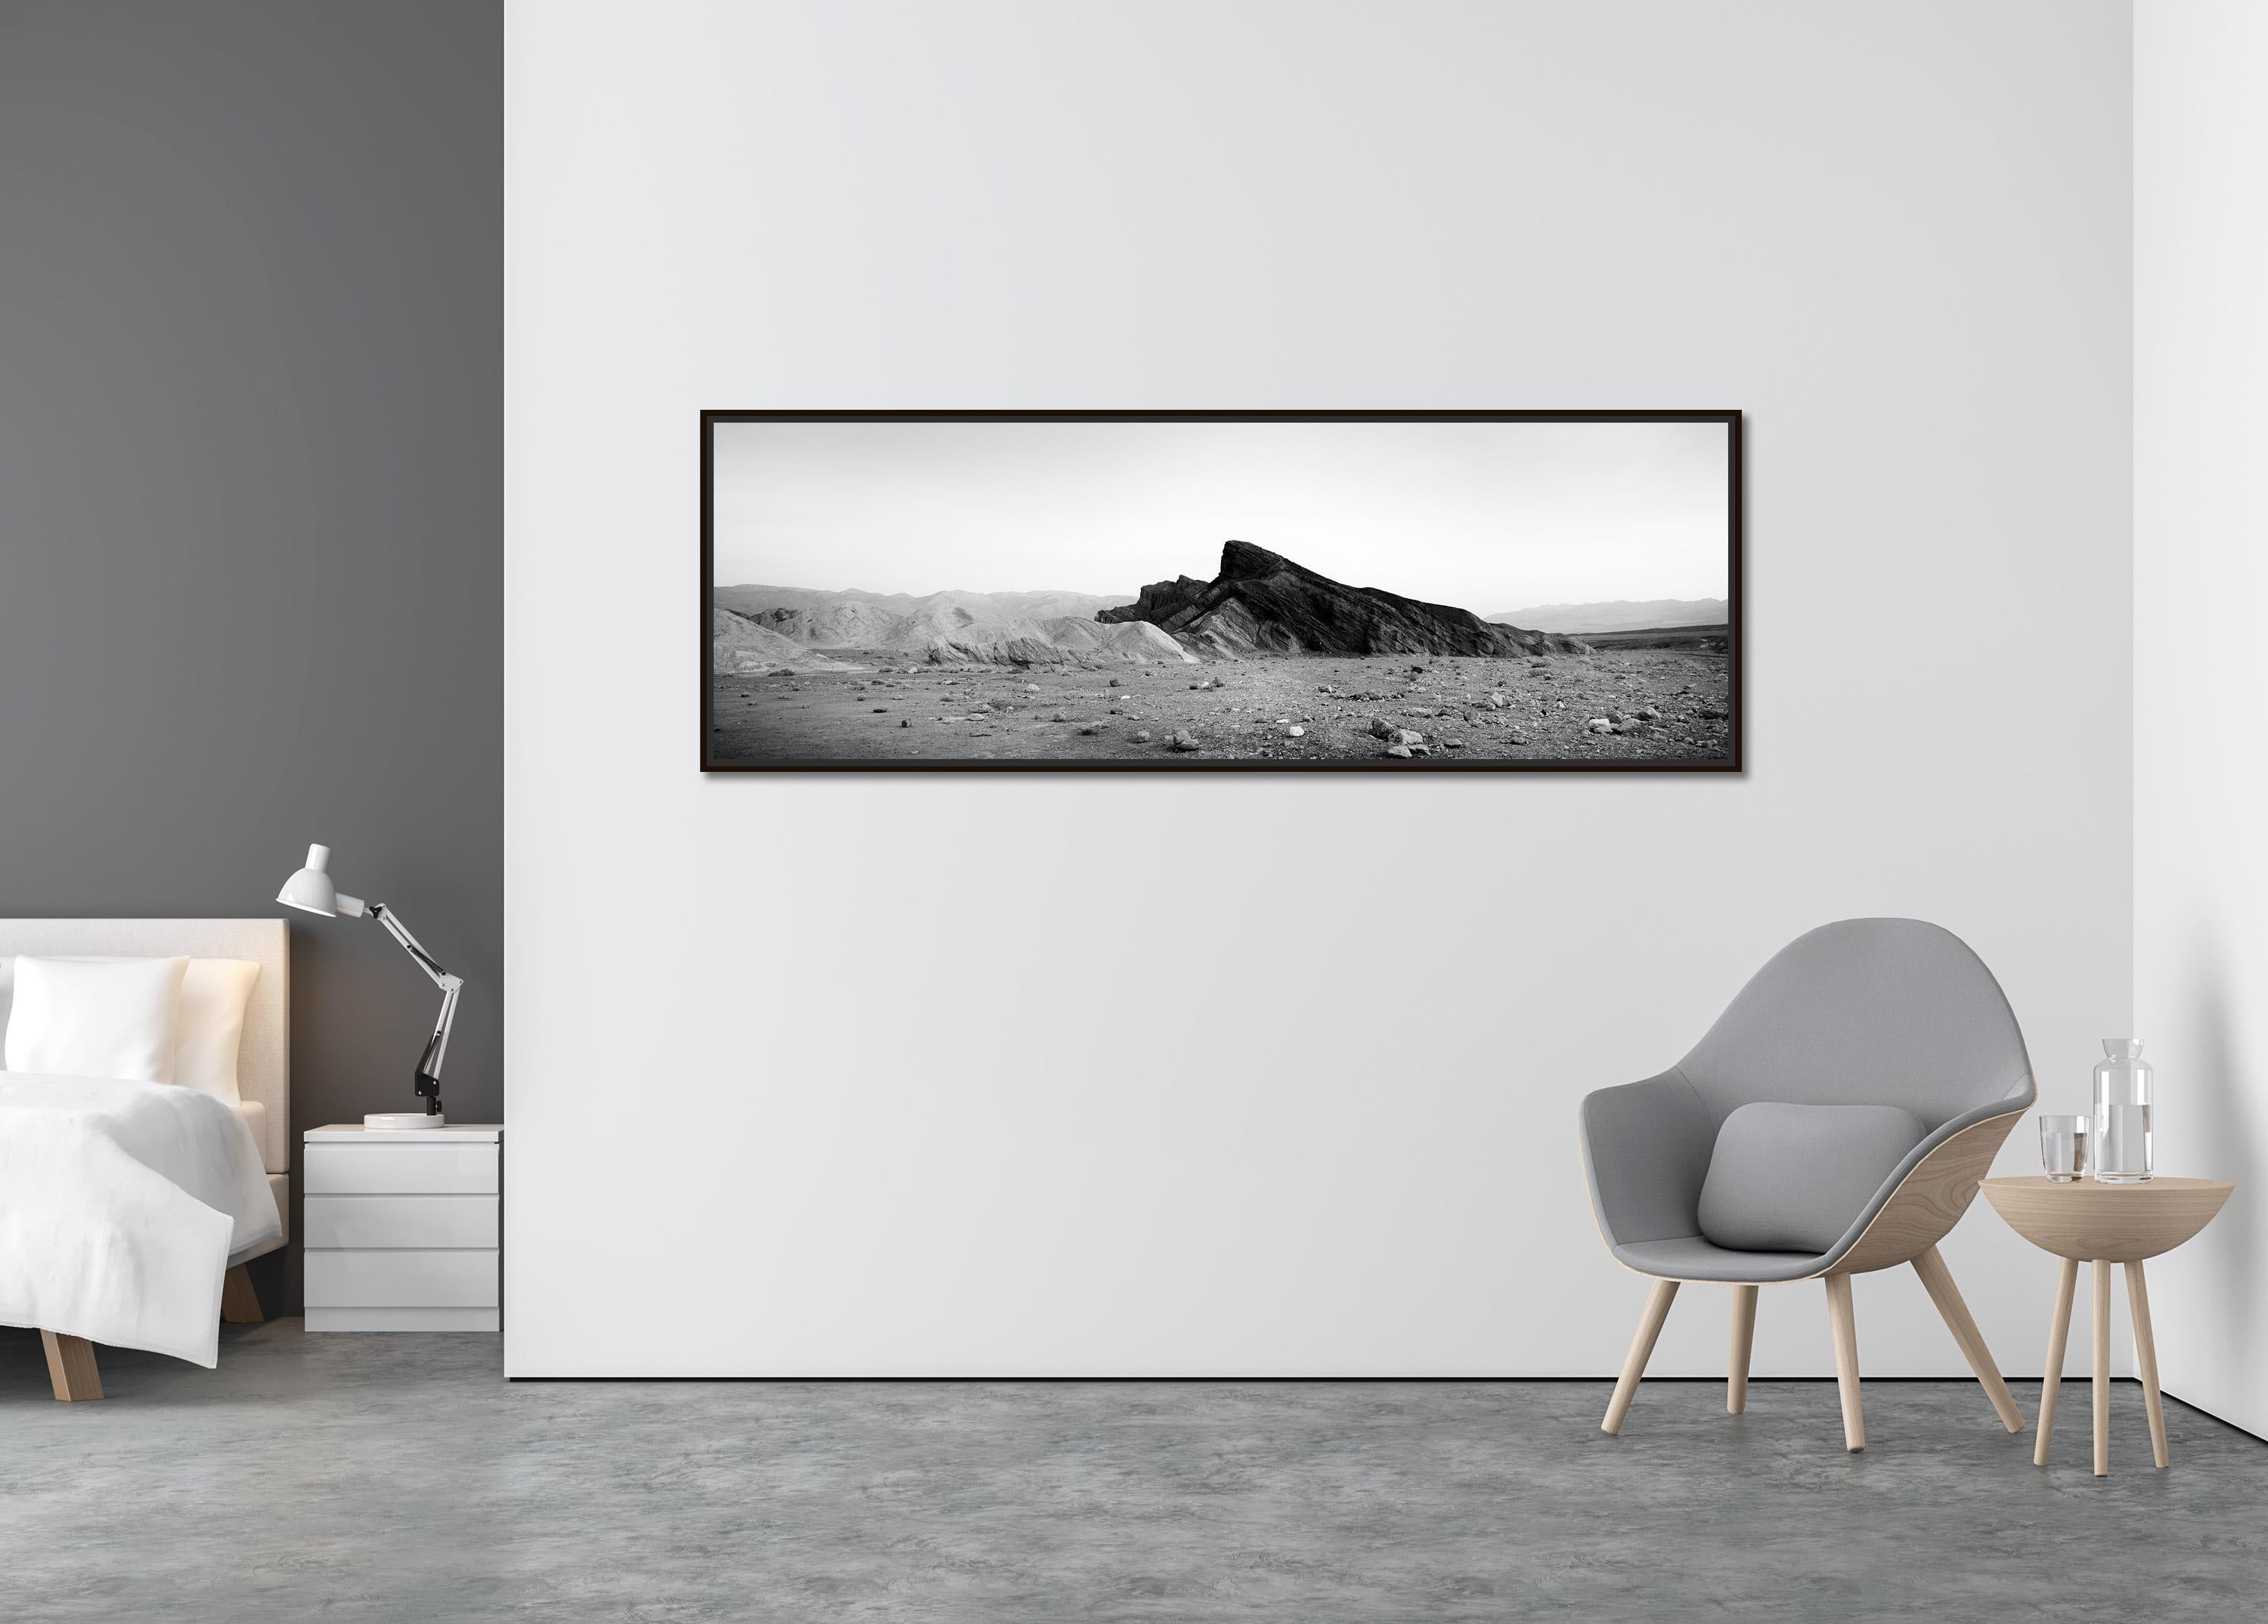 Black Rock, Berge, Death Valley, USA, schwarz-weiße Landschaftsfotografie (Zeitgenössisch), Photograph, von Gerald Berghammer